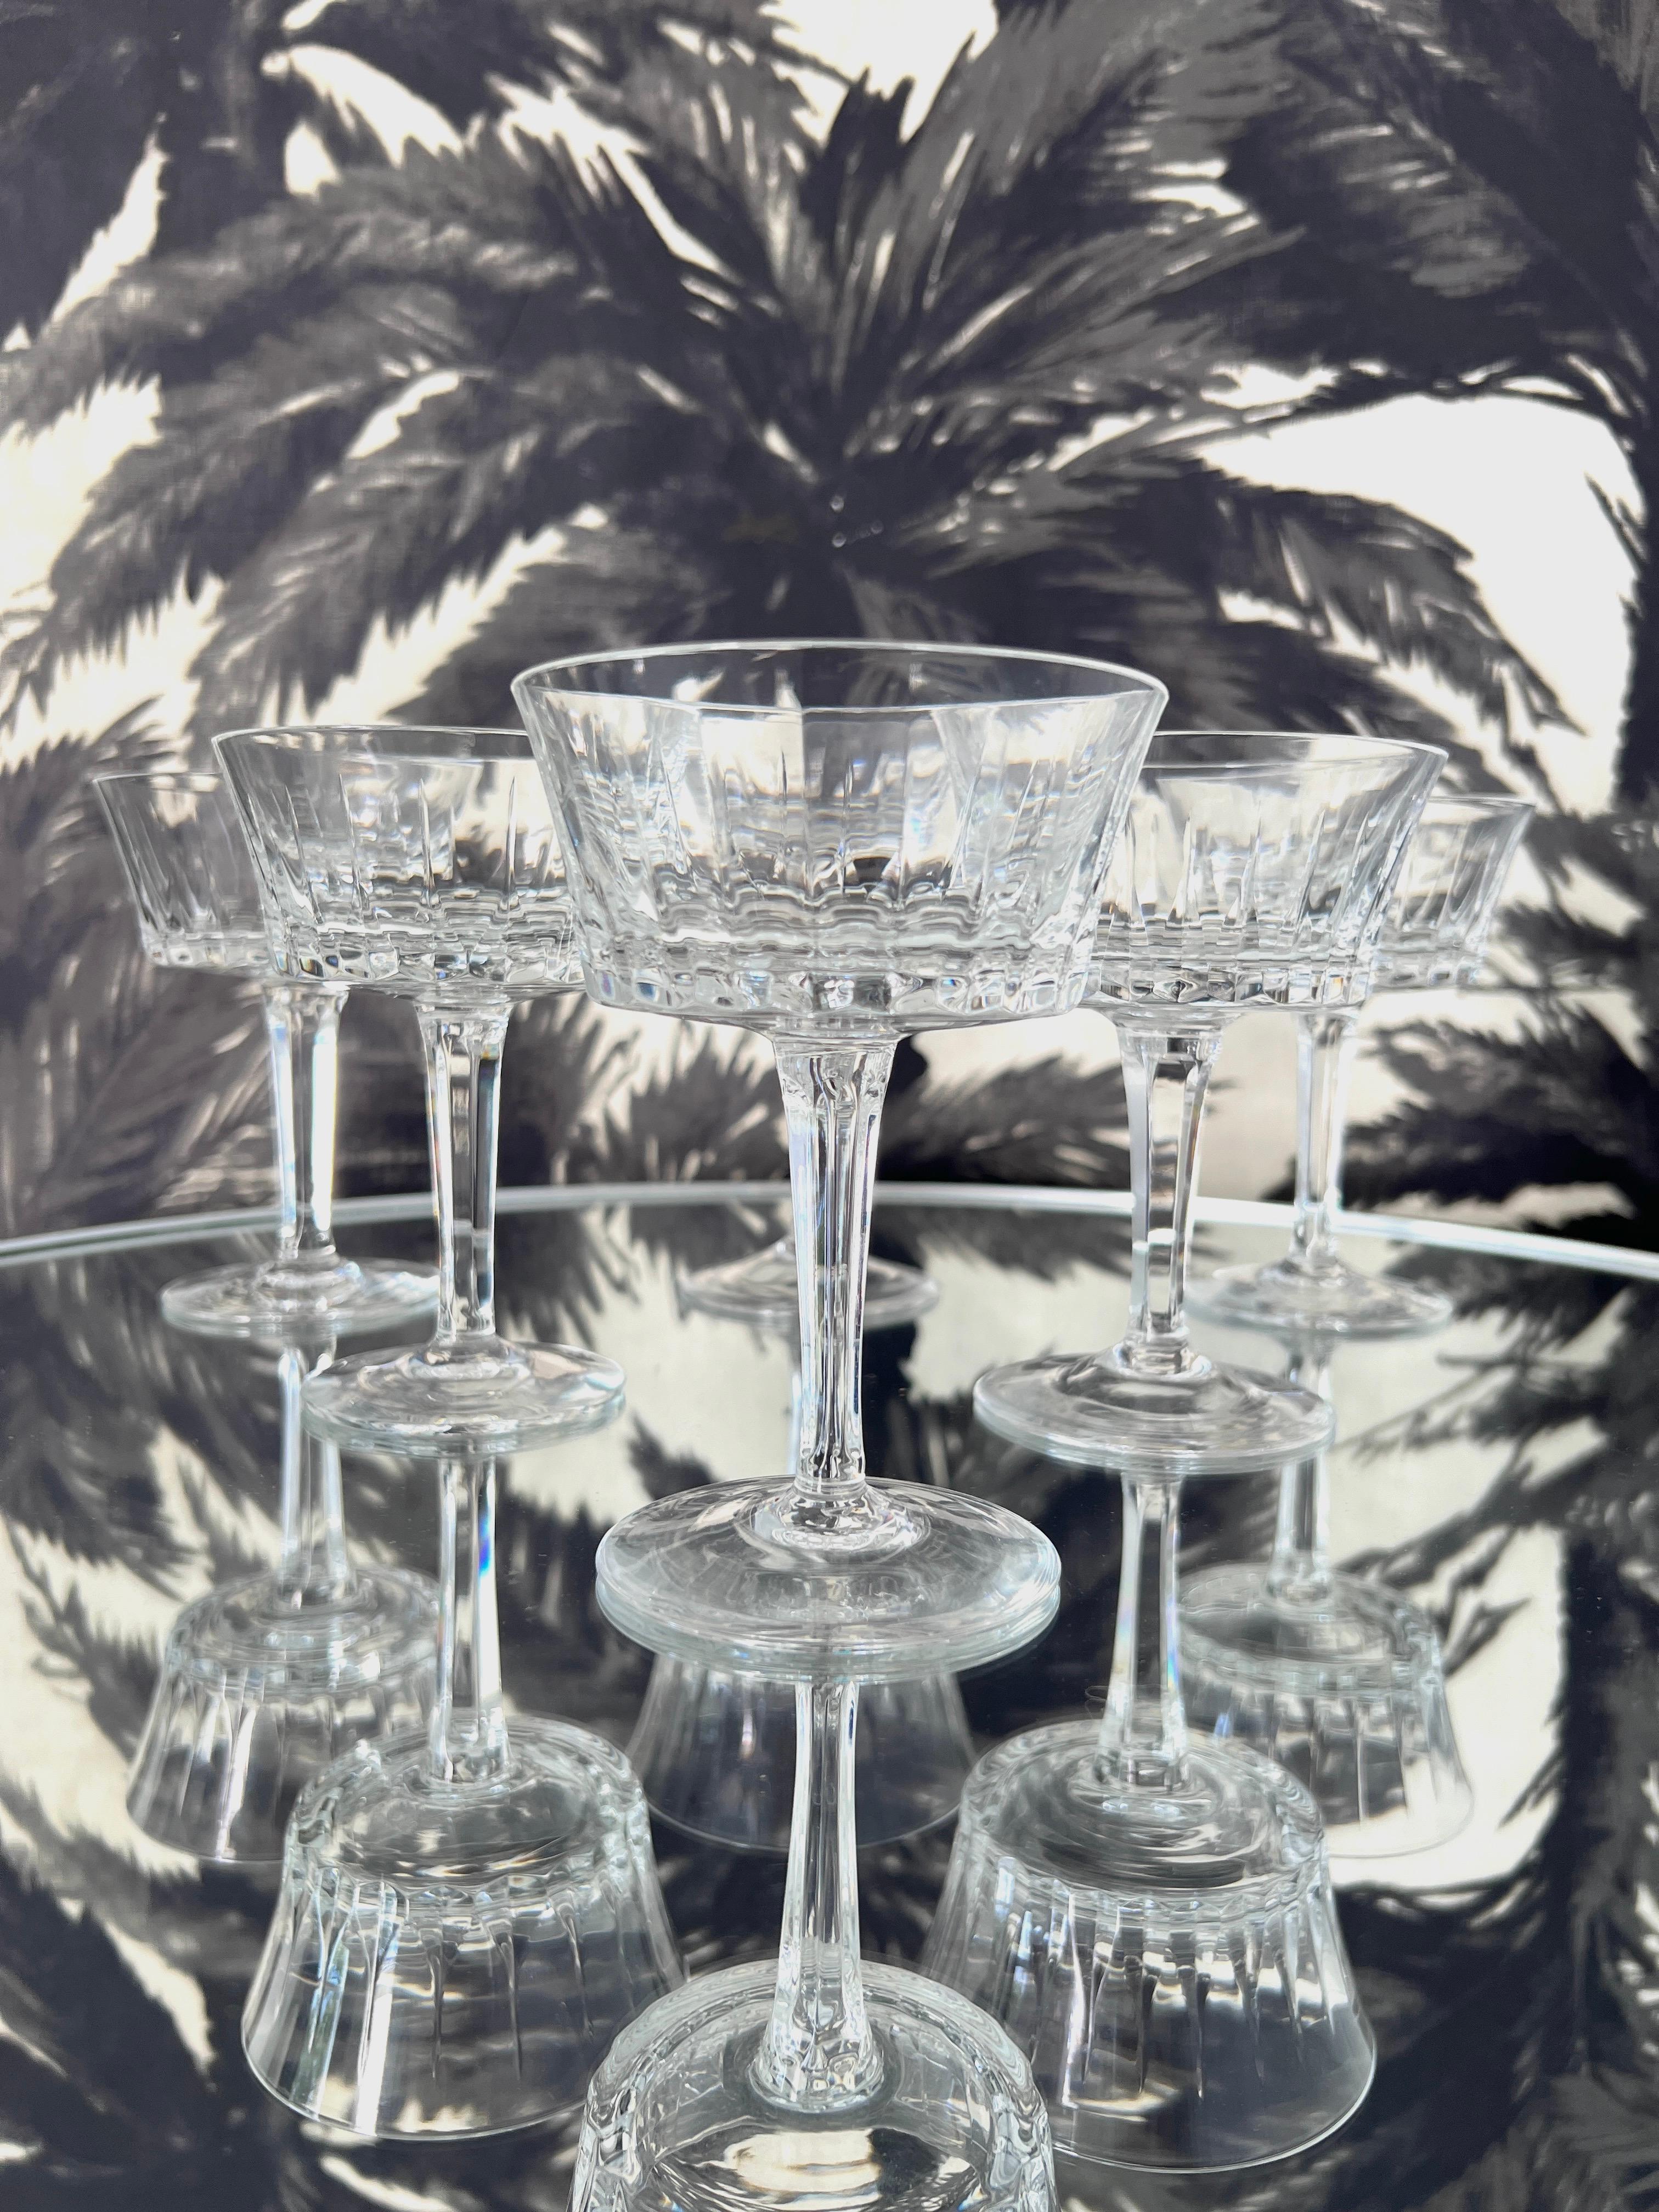 Stielgläser aus Vintage-Kristall von Gorham, ca. 1970. Die eleganten mundgeblasenen Champagnergläser sind mit geätzten vertikalen Schliffen entlang der Schalen versehen und haben facettierte mehrseitige Stiele, die wie Prismen reflektieren. Die